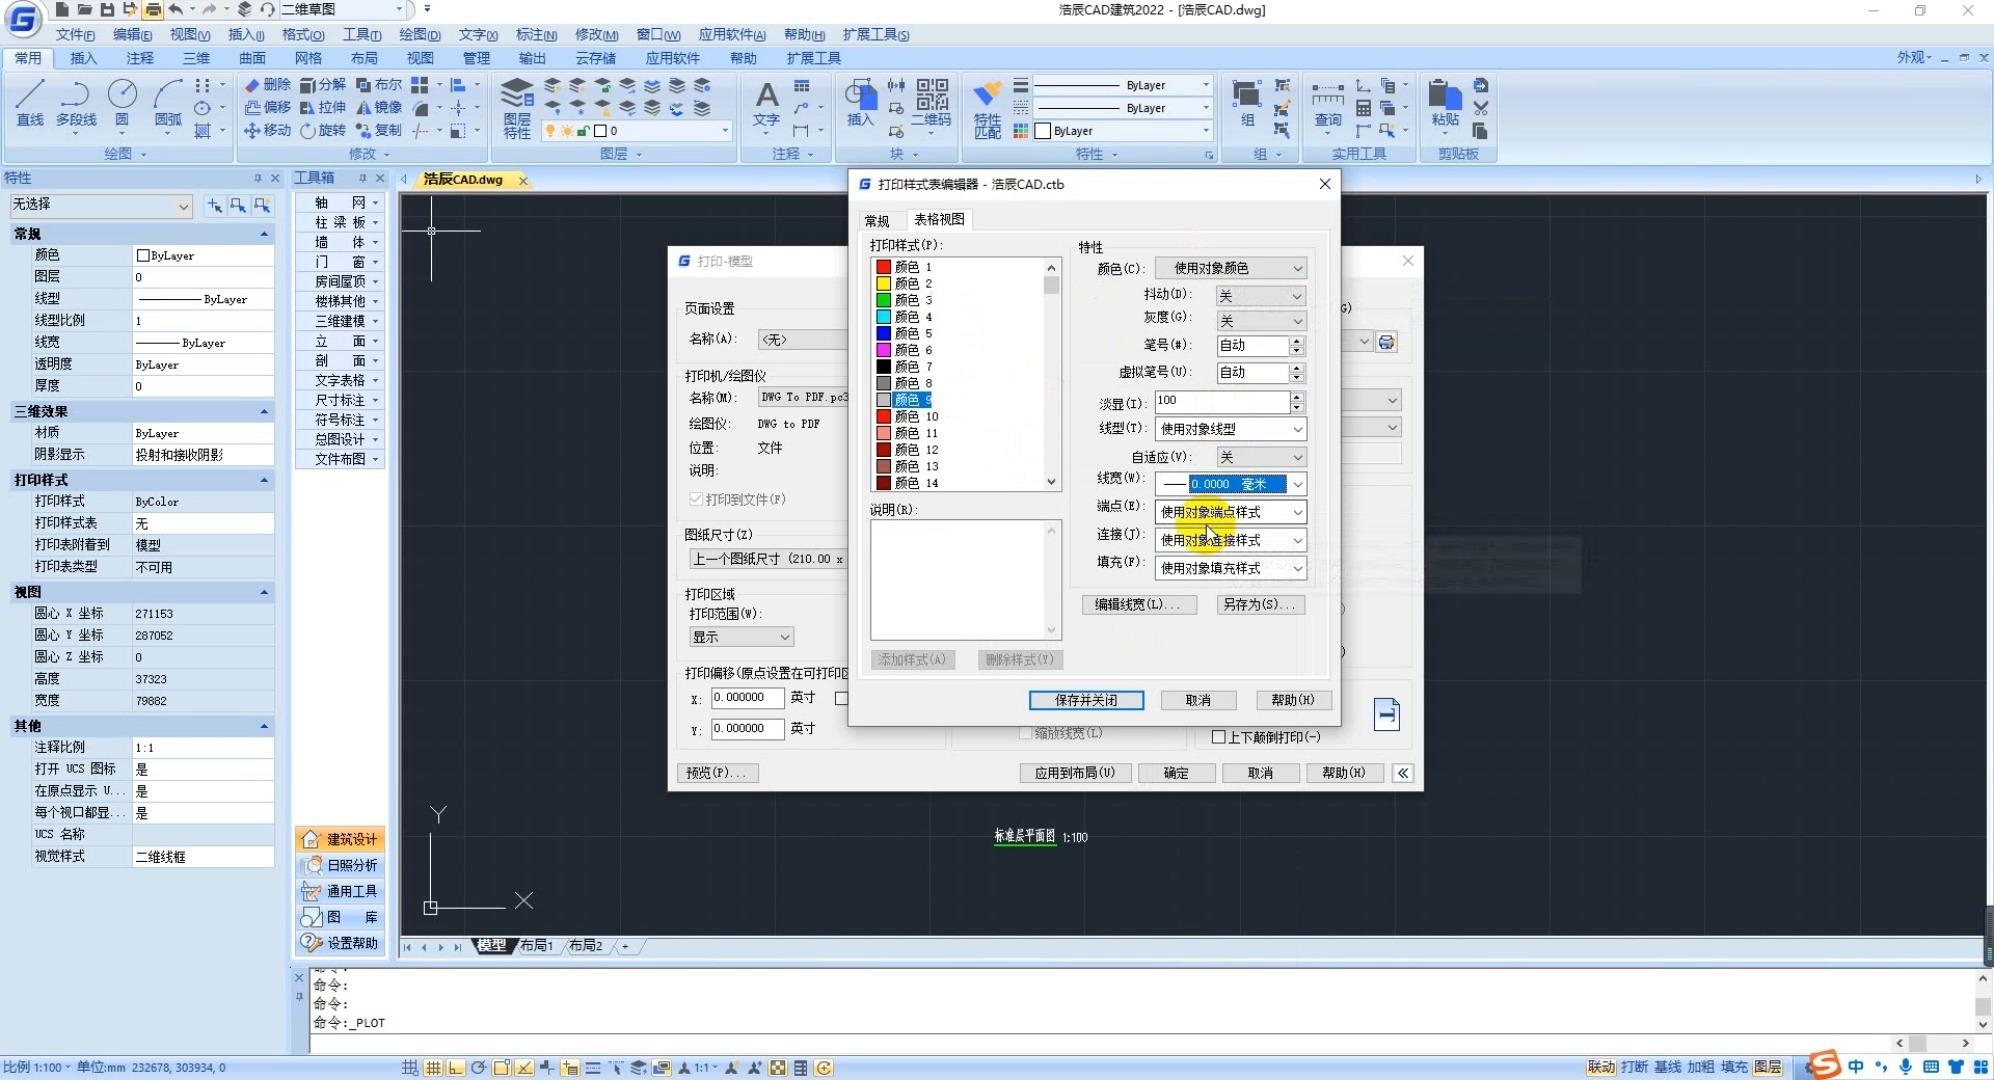 CAD教程——如何把多个CAD图放到一张纸上打印 - CAD安装教程 - 土木工程网